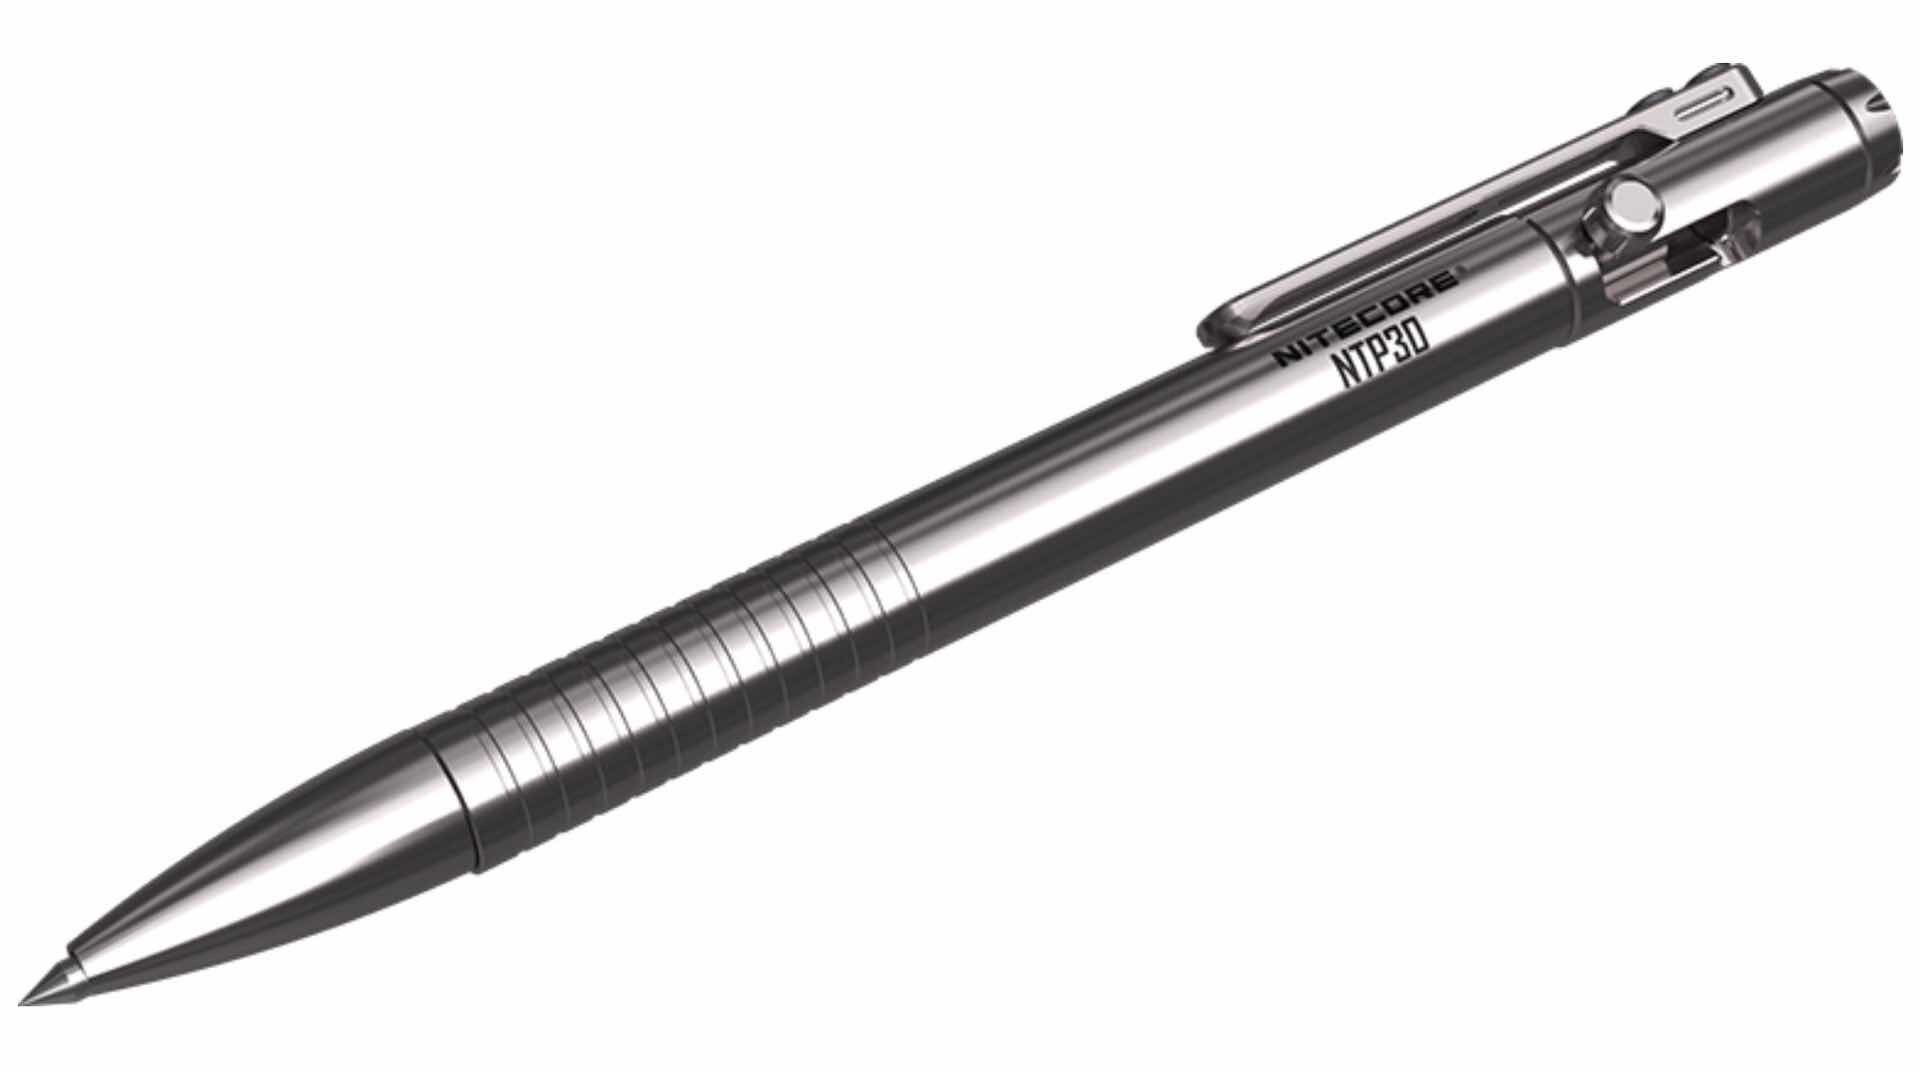 NITECORE titanium tactical pen. ($120)